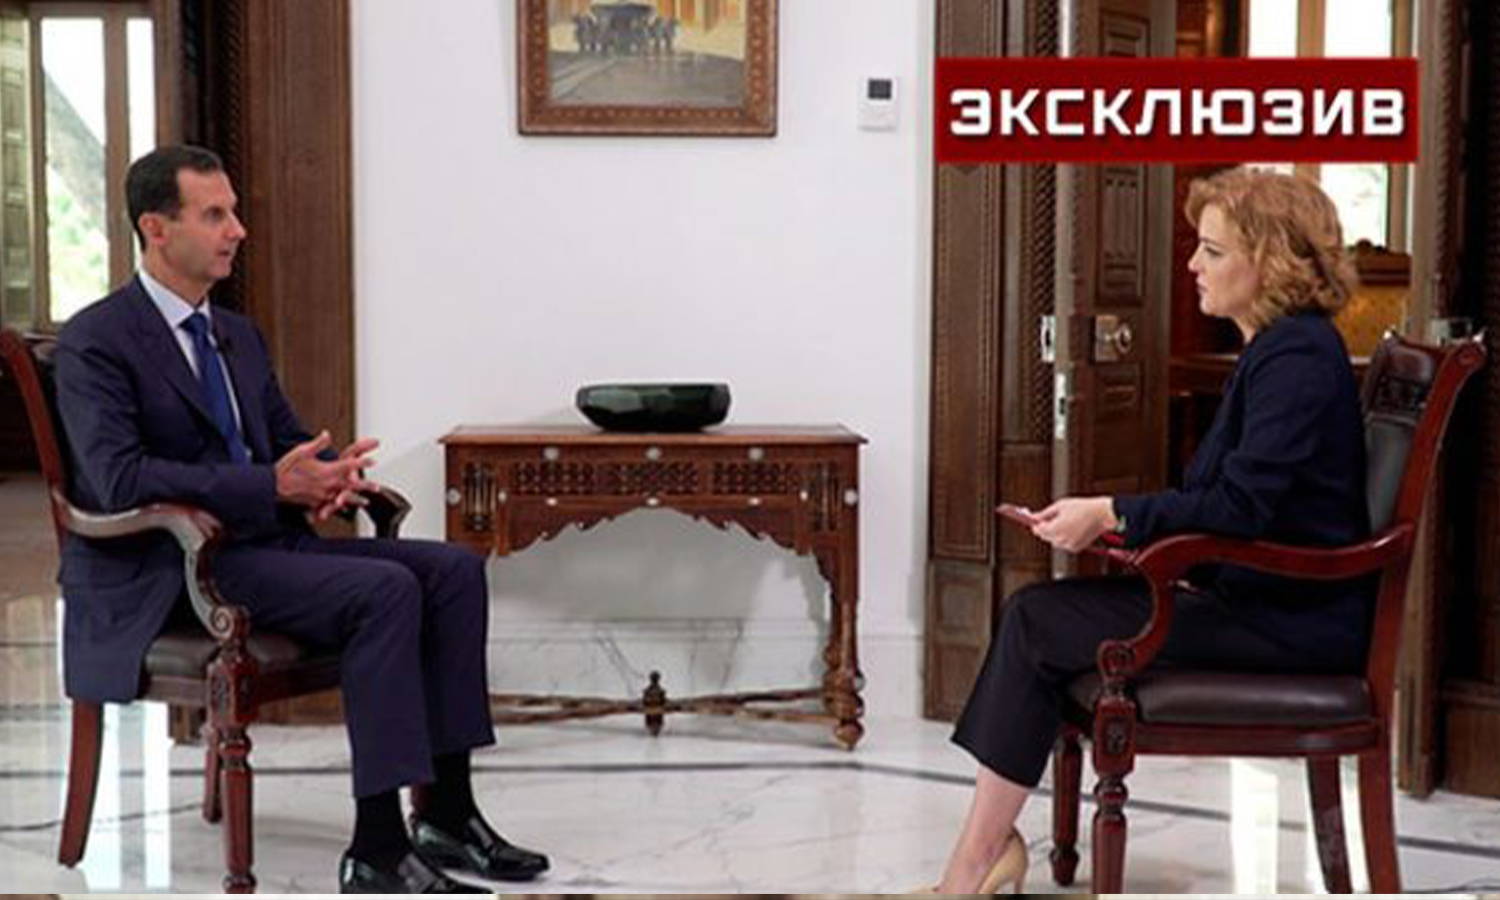 رئيس النظام السوري، بشار الأسد في مقابلة خاصة مع قناة "زيفزدا" الروسية، 30 من أيلول